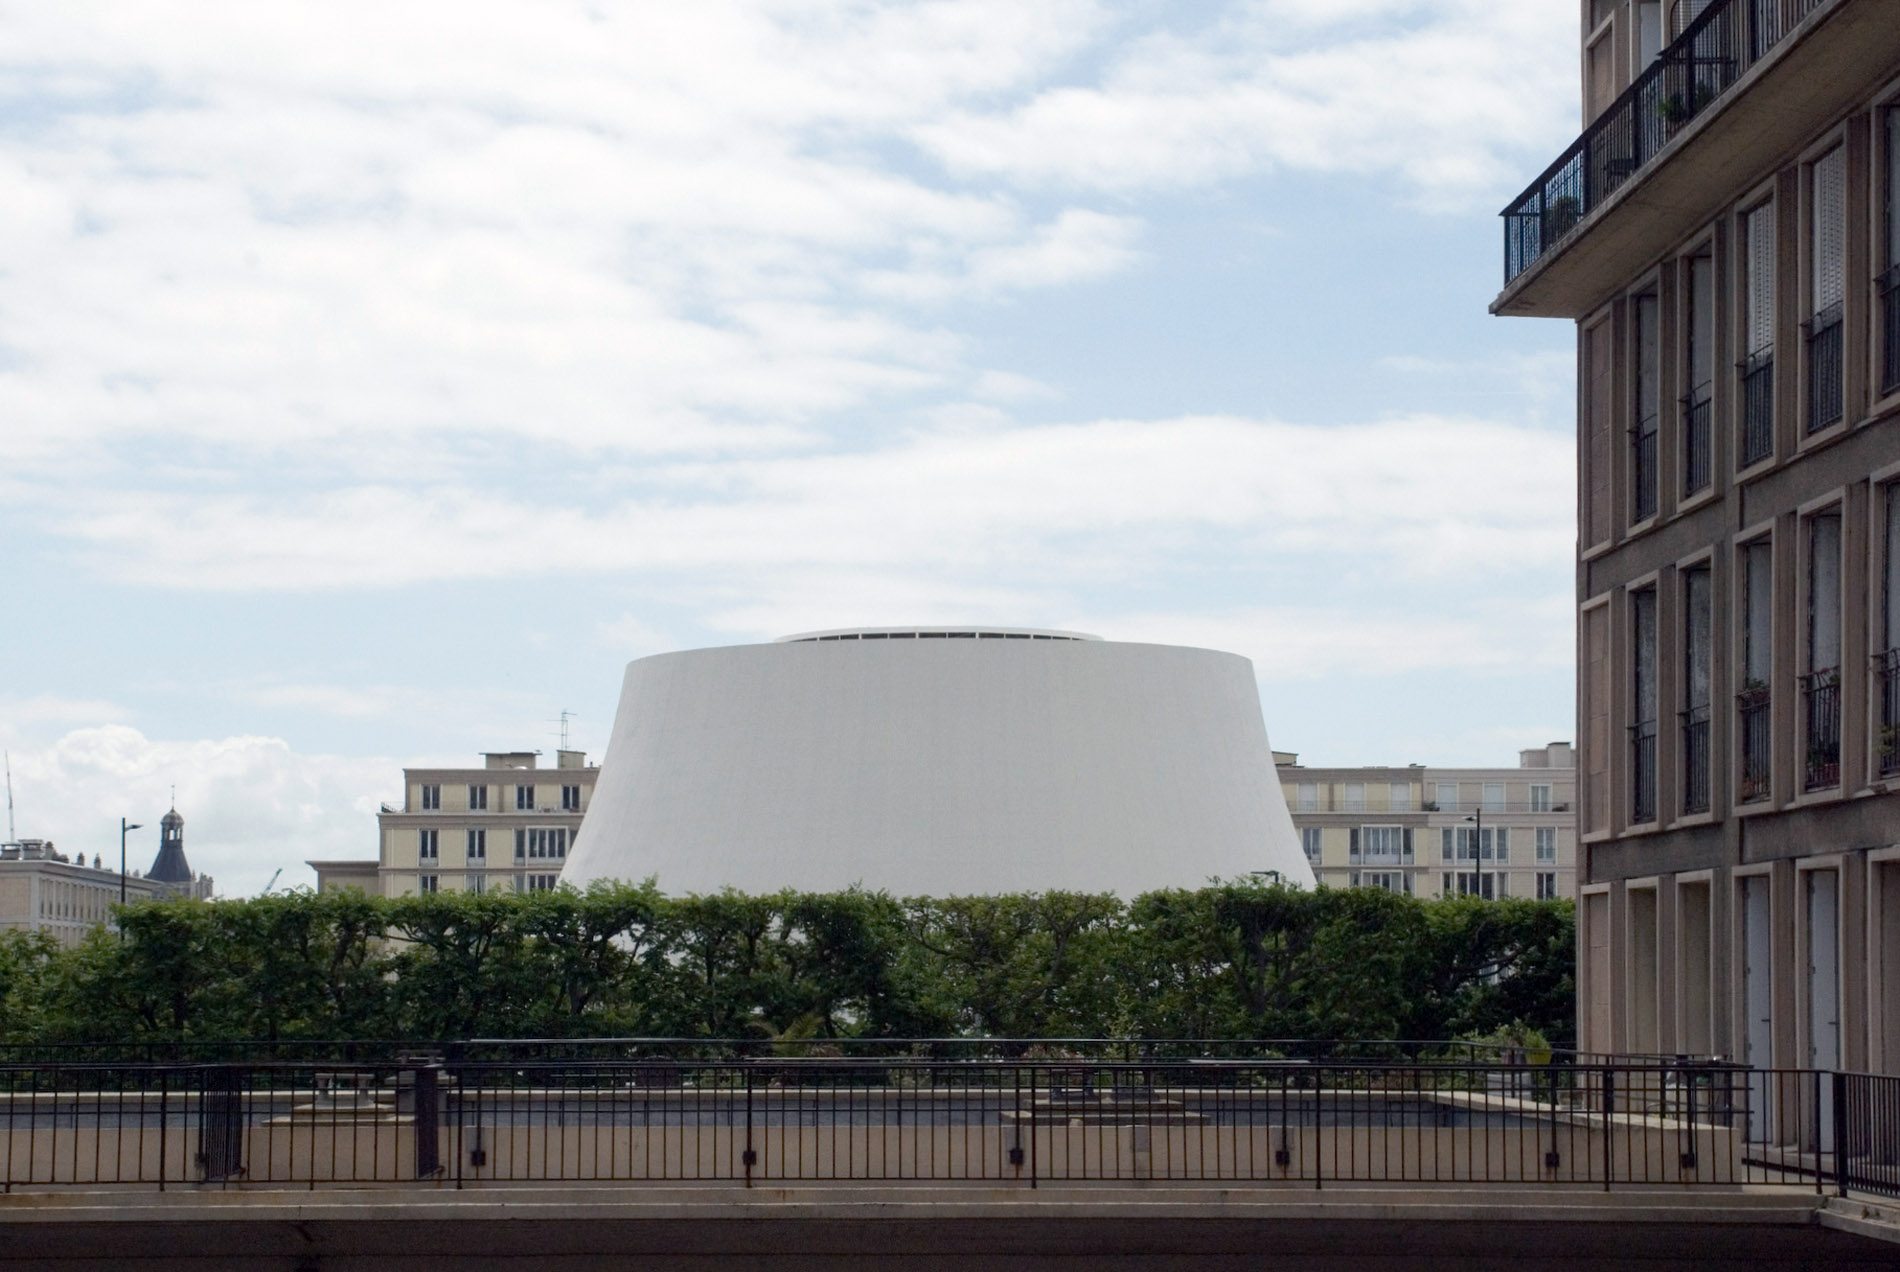 2014 wurde das Ensemble umfassend saniert. Seitdem befindet sich im "großen Vulkan" die Scène Nationale und eine Bar im Retro-Style. Es ist das größte Gebäude mit hyperbolischen Formen. Im "kleinen Vulkan" sind seit 2015 die Bibliothek und Mediathek von Le Havre beheimatet.